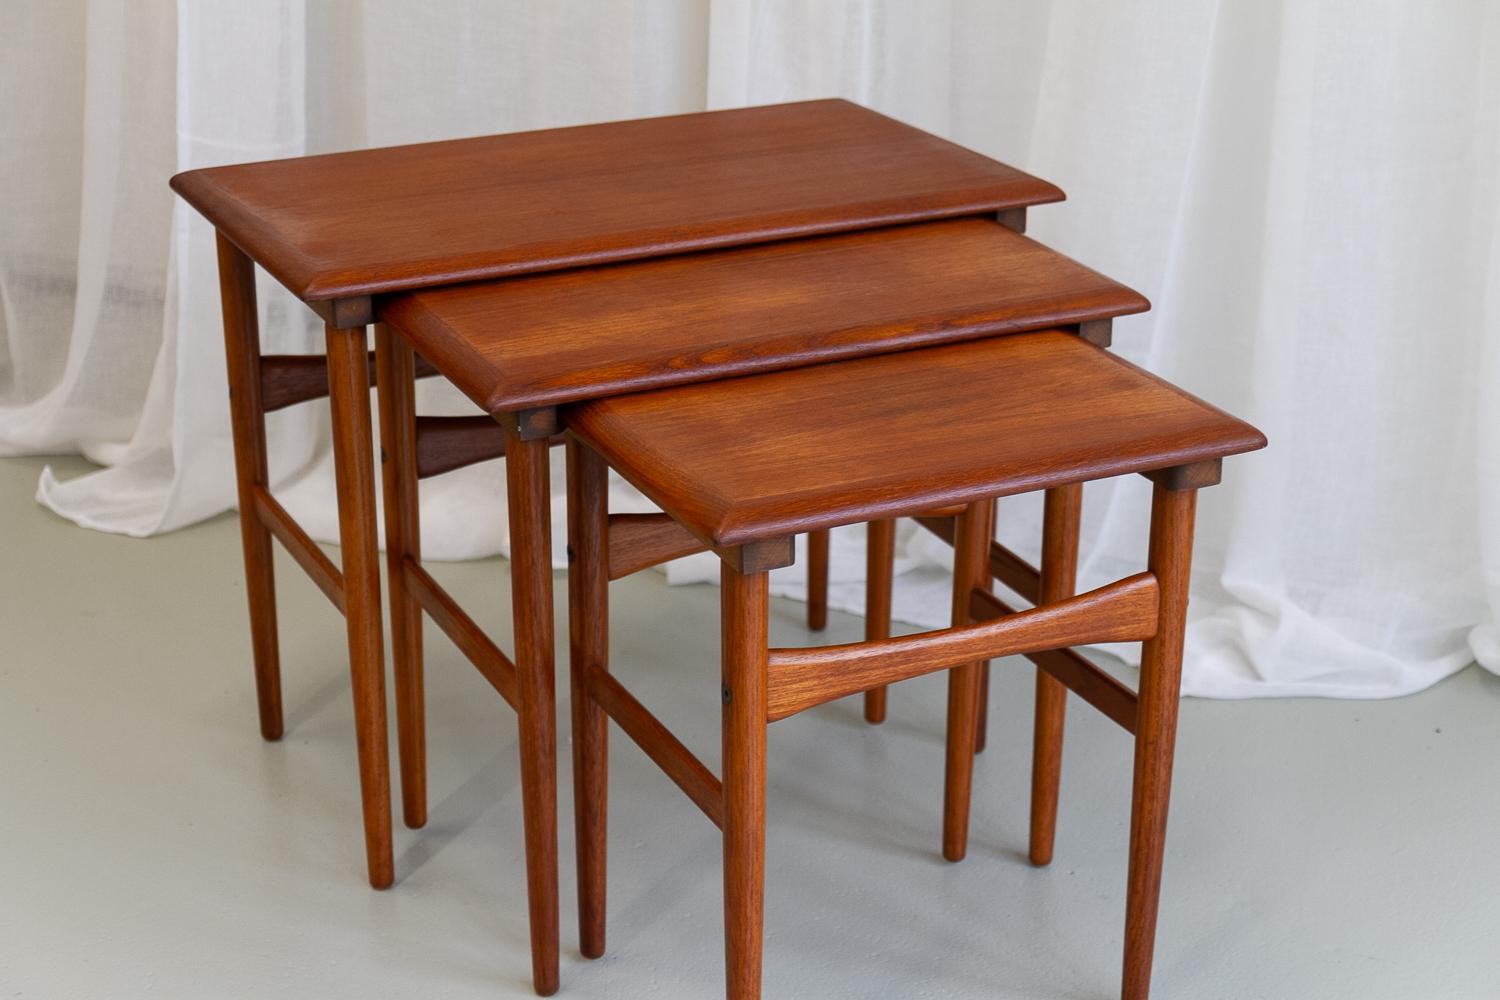 Scandinavian Modern Danish Modern Teak Nesting Tables 1960s. Set of 3. For Sale